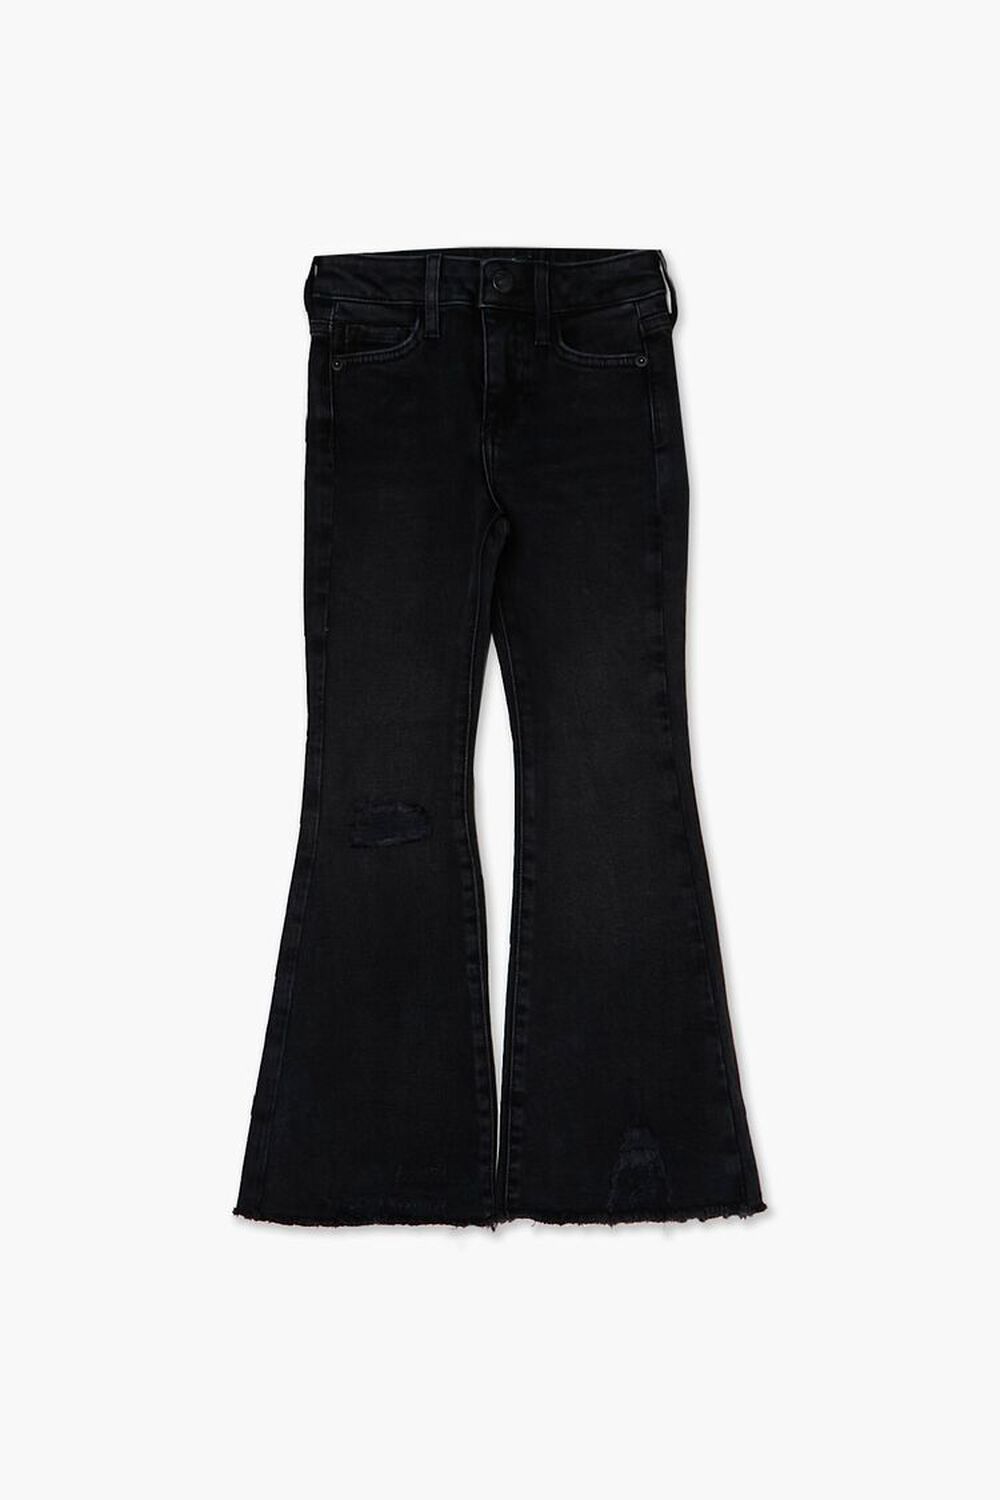 BLACK Girls Flare Jeans (Kids), image 1